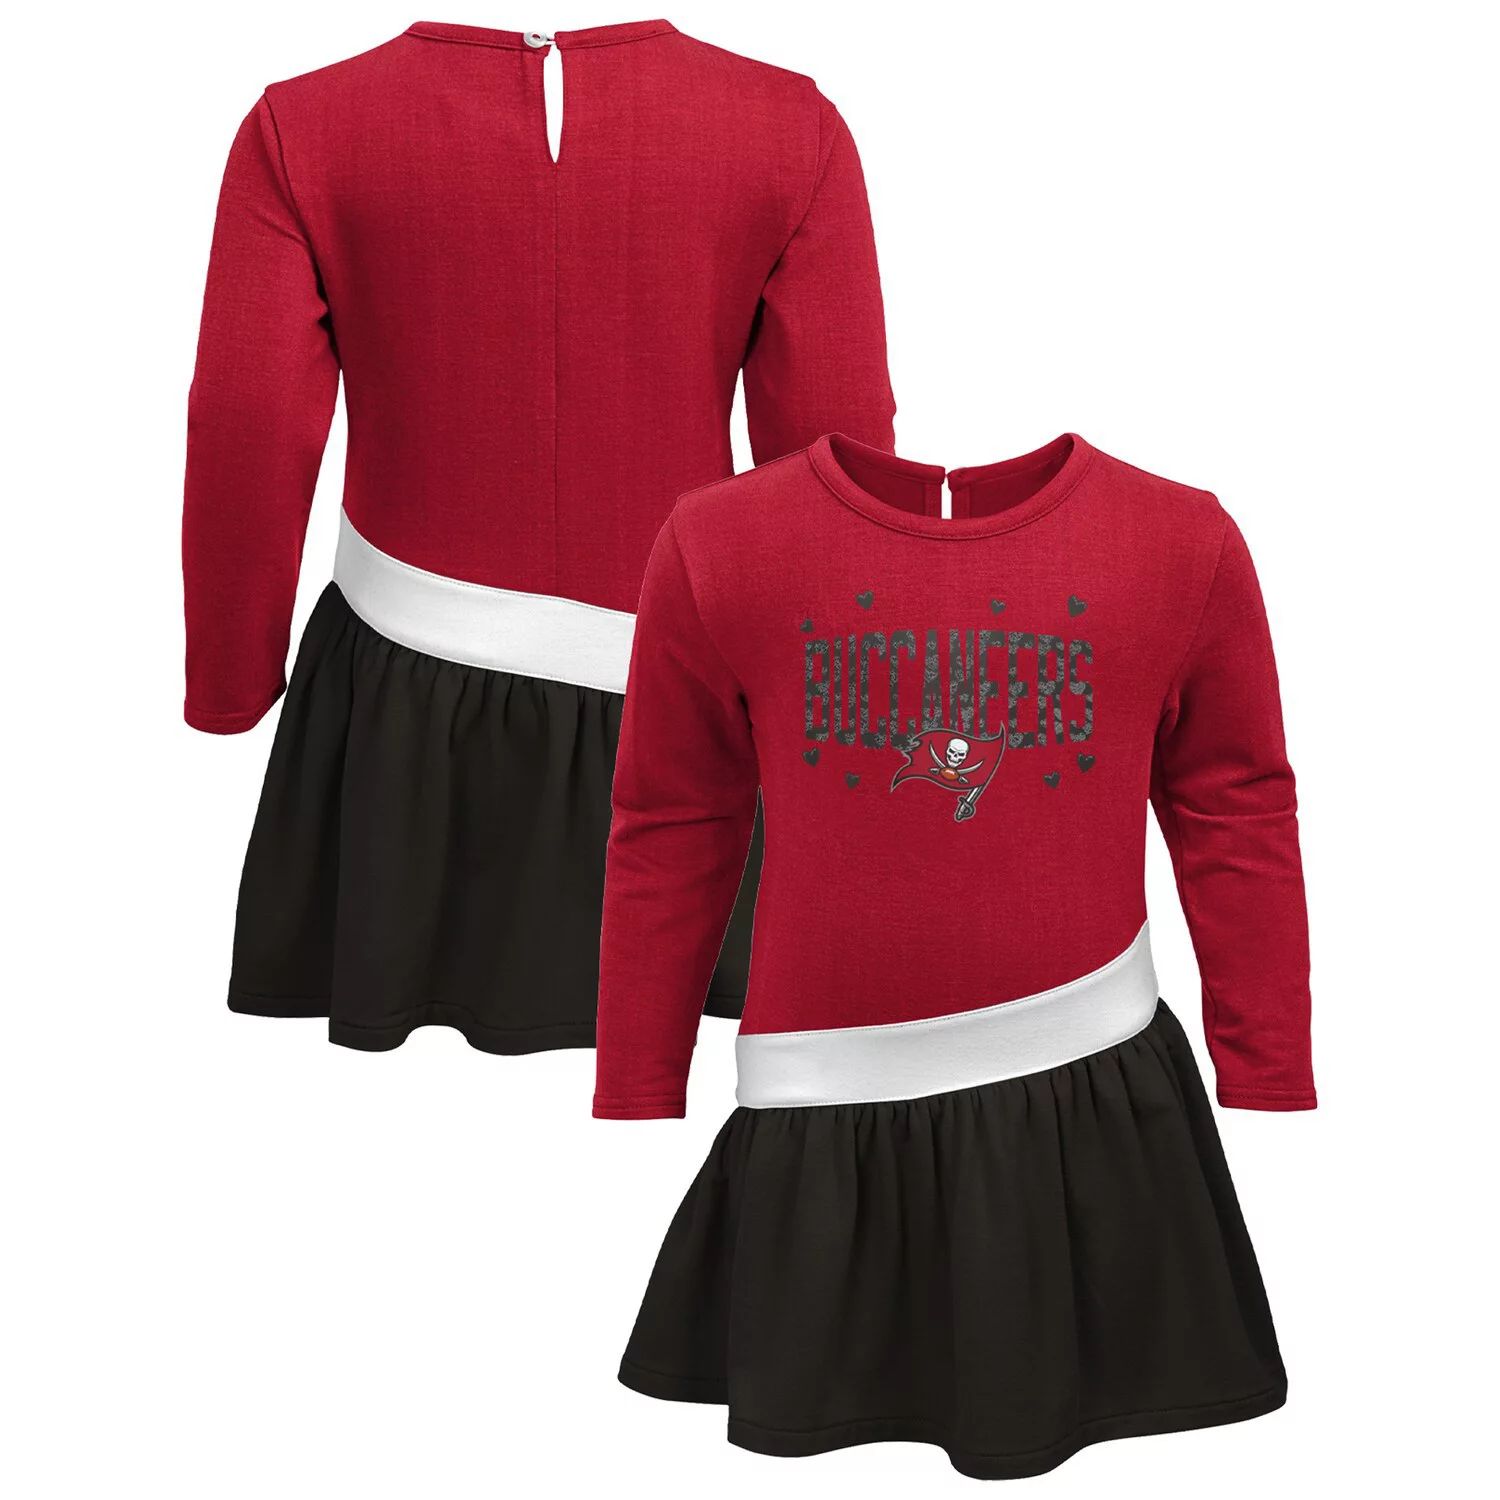 Трикотажное трикотажное платье Tampa Bay Buccaneers для девочек-младенцев красного/оловянного цвета Outerstuff